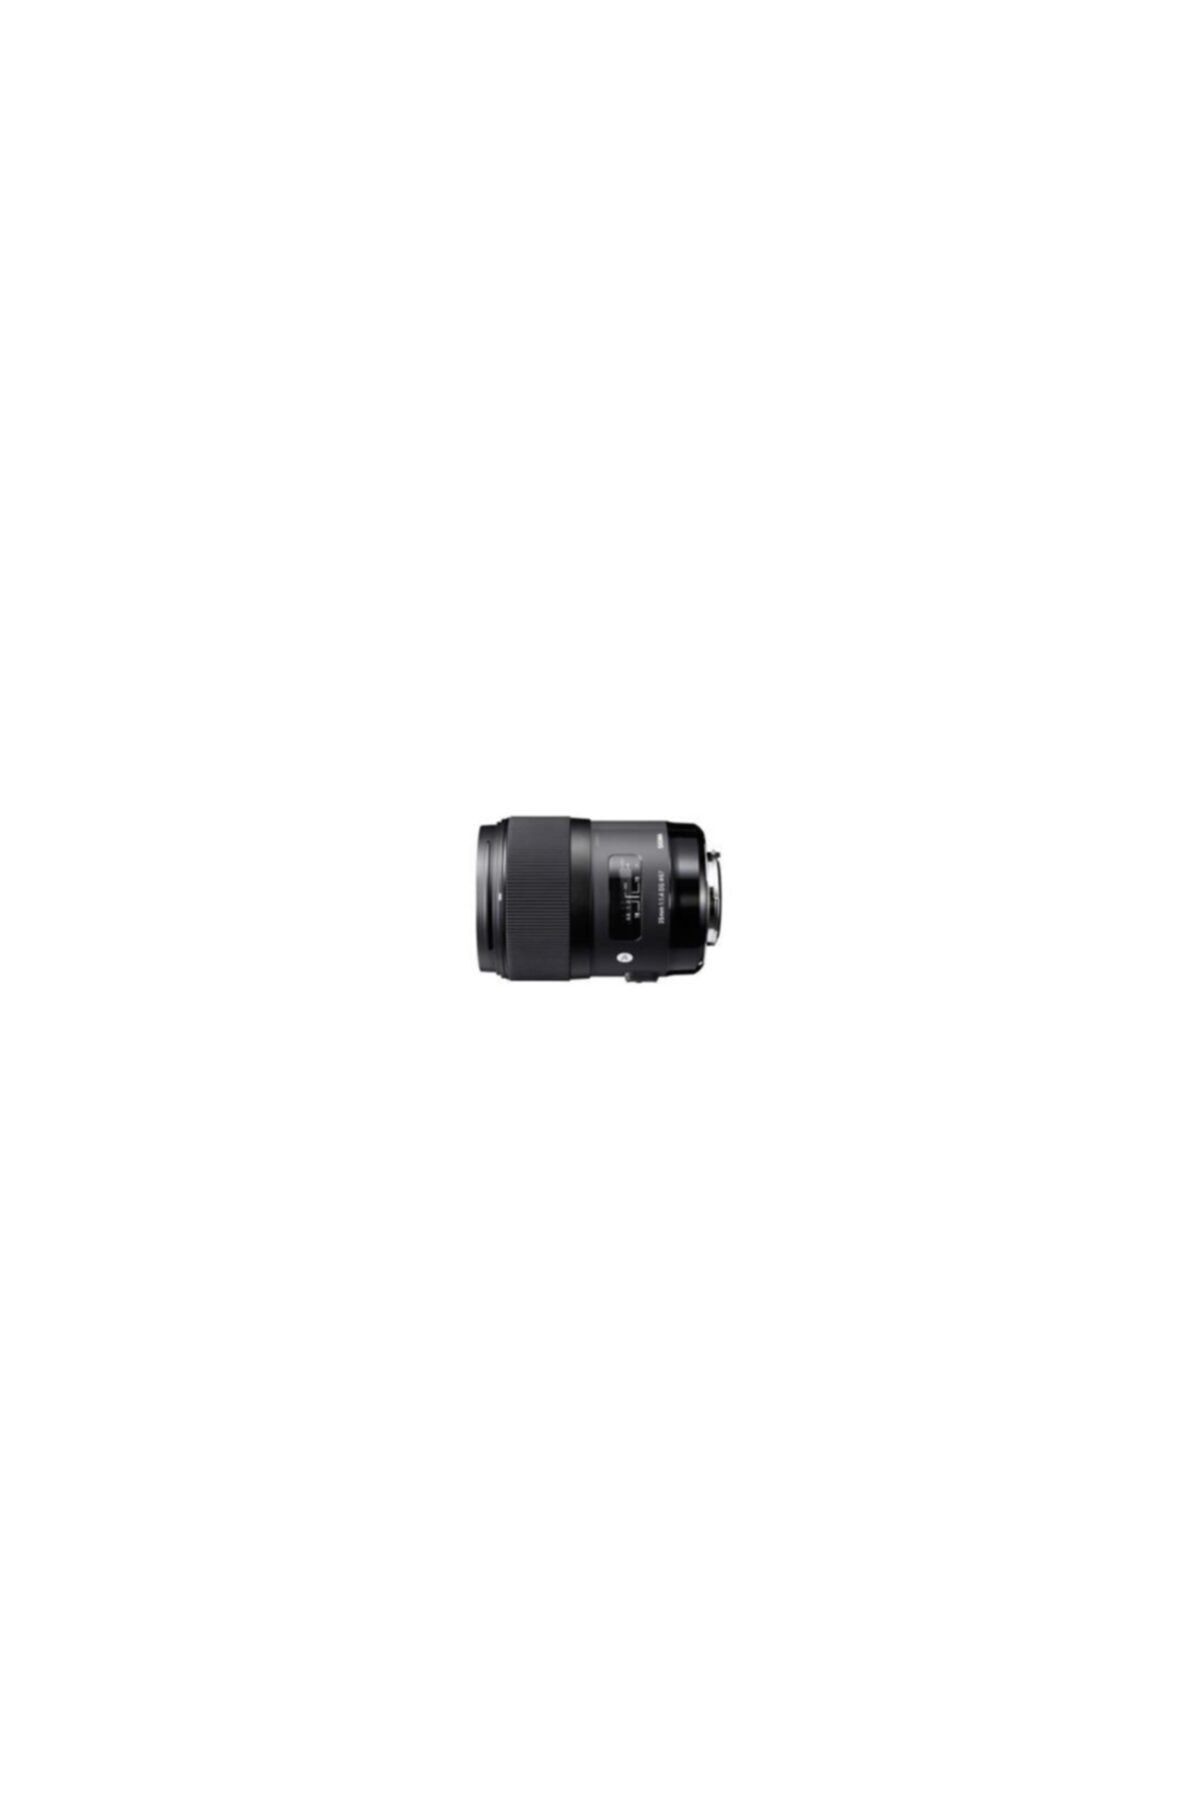 Sigma Canon Uyumlu 35mm F/1.4 Dg Hsm Objektif